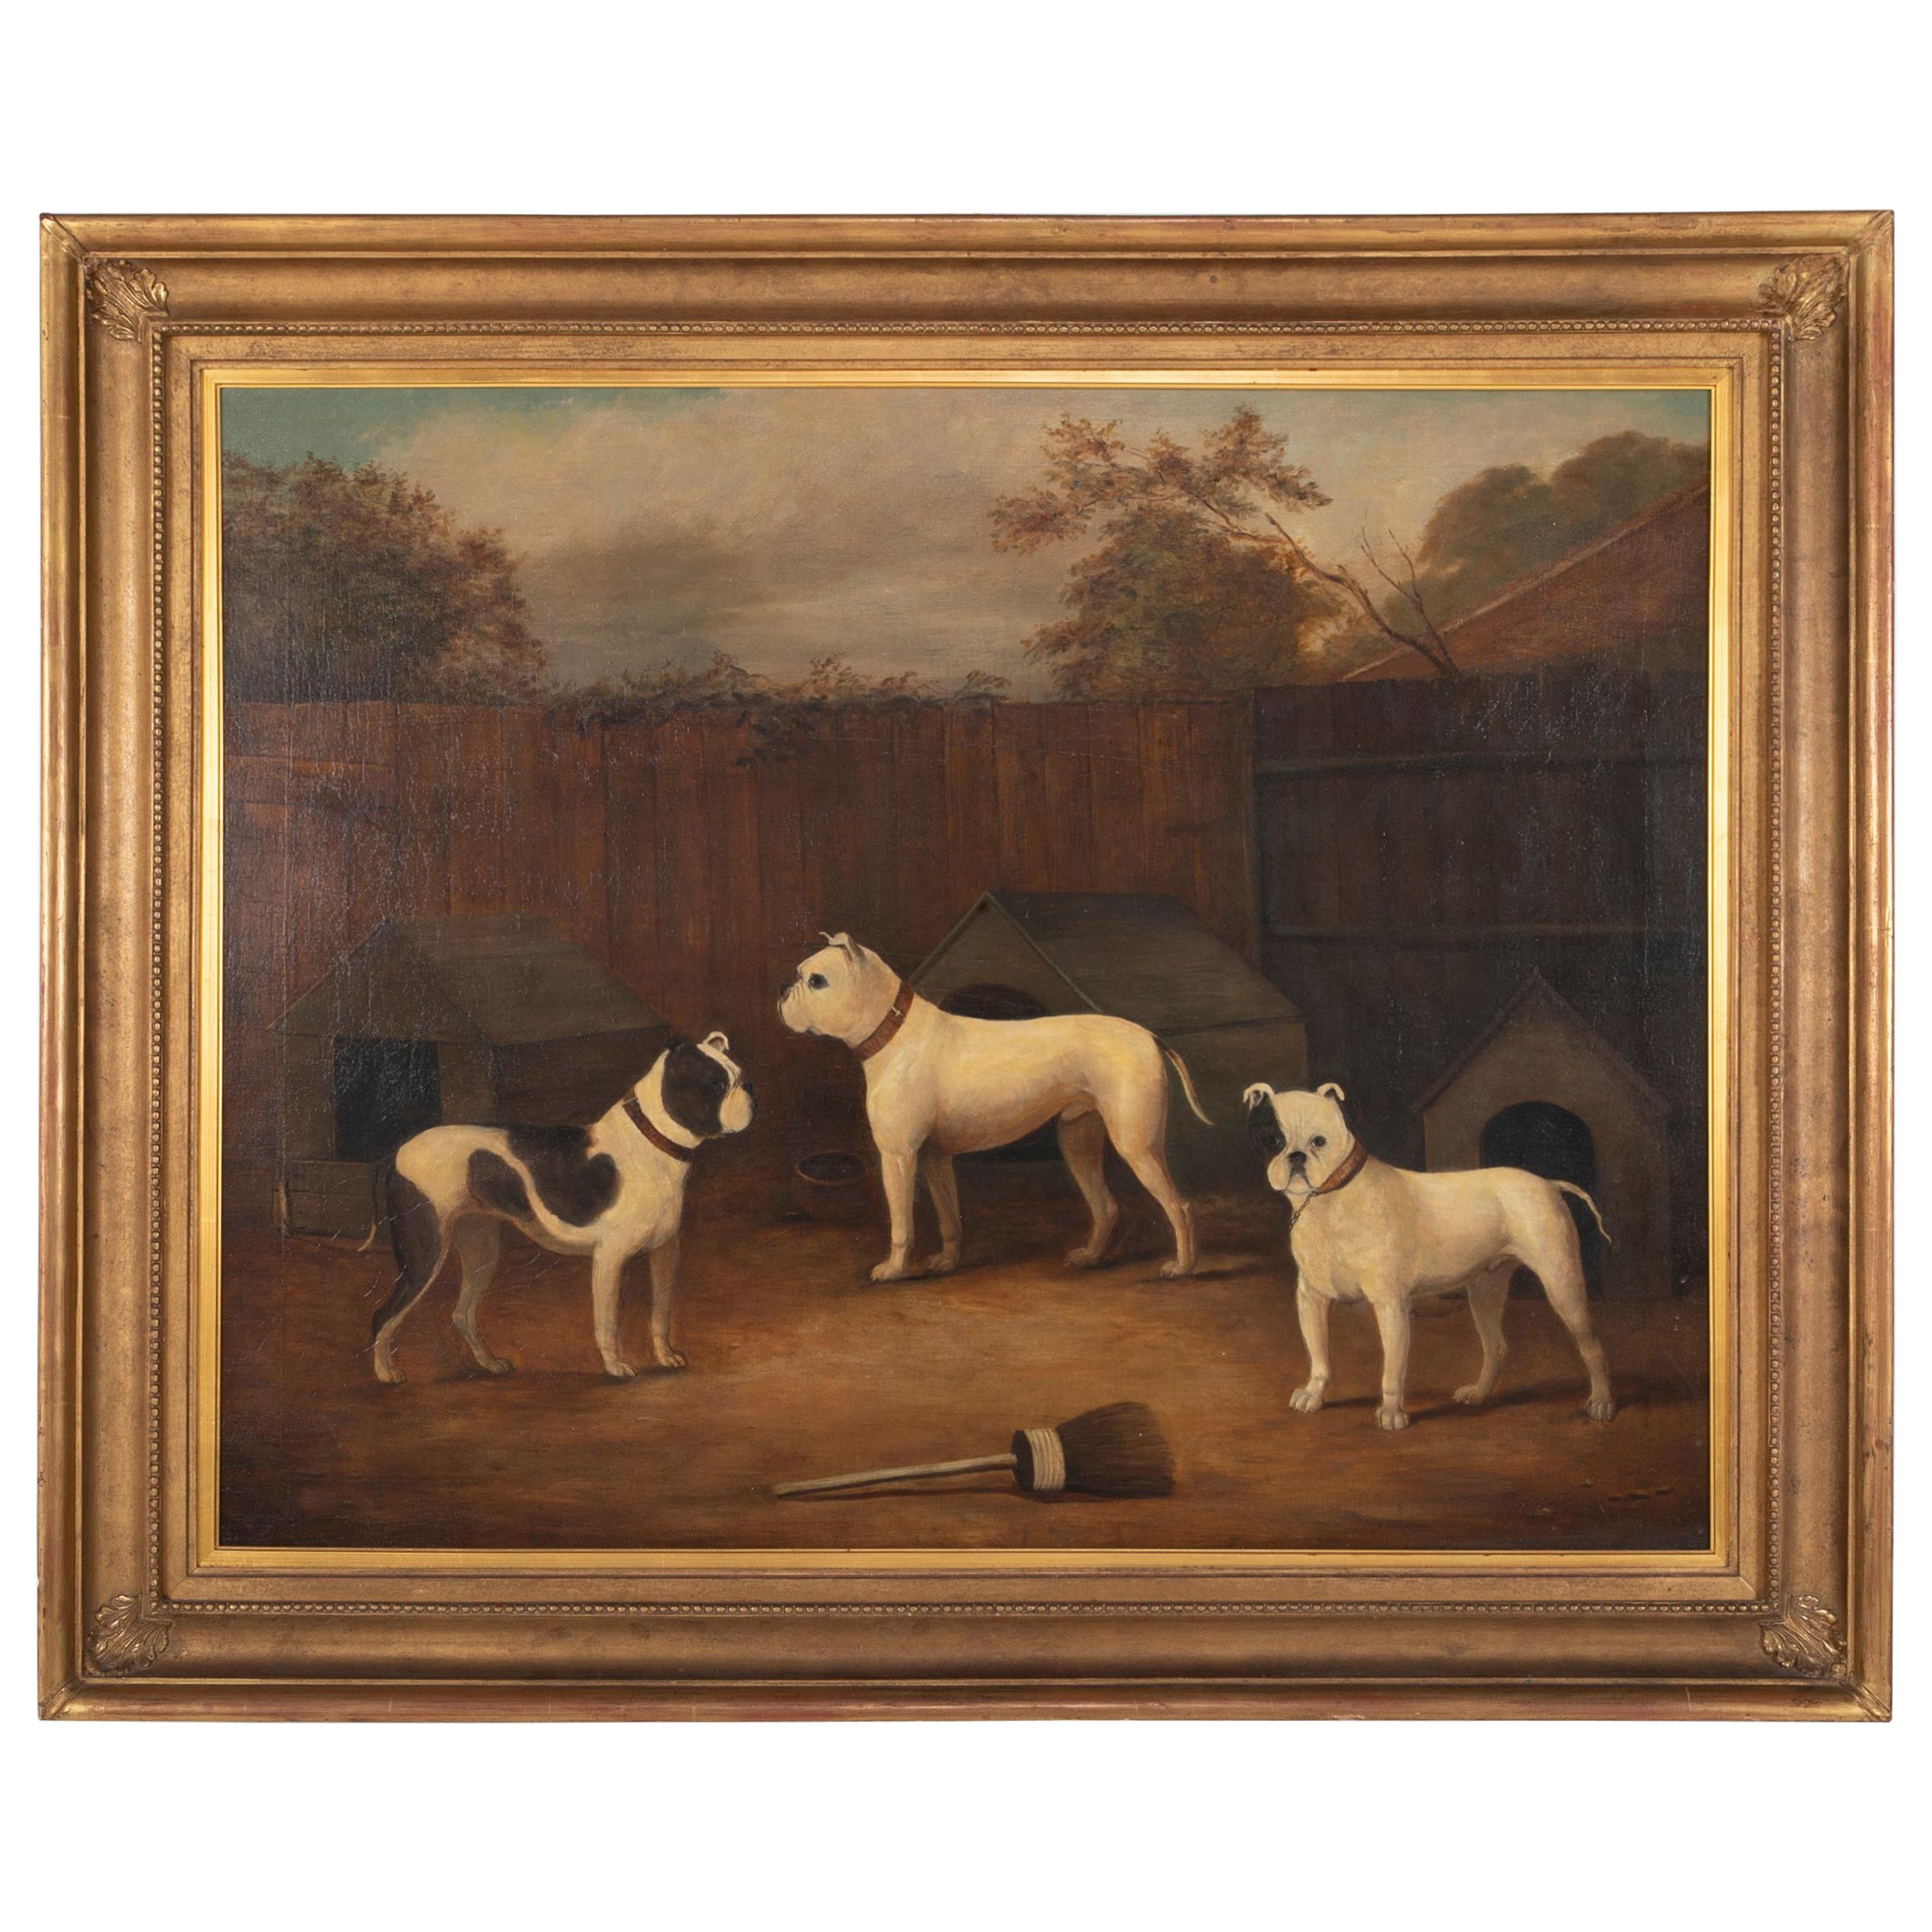 Peinture à l'huile du début du 19e siècle représentant trois chiens, faussement réalisée par A James Ward